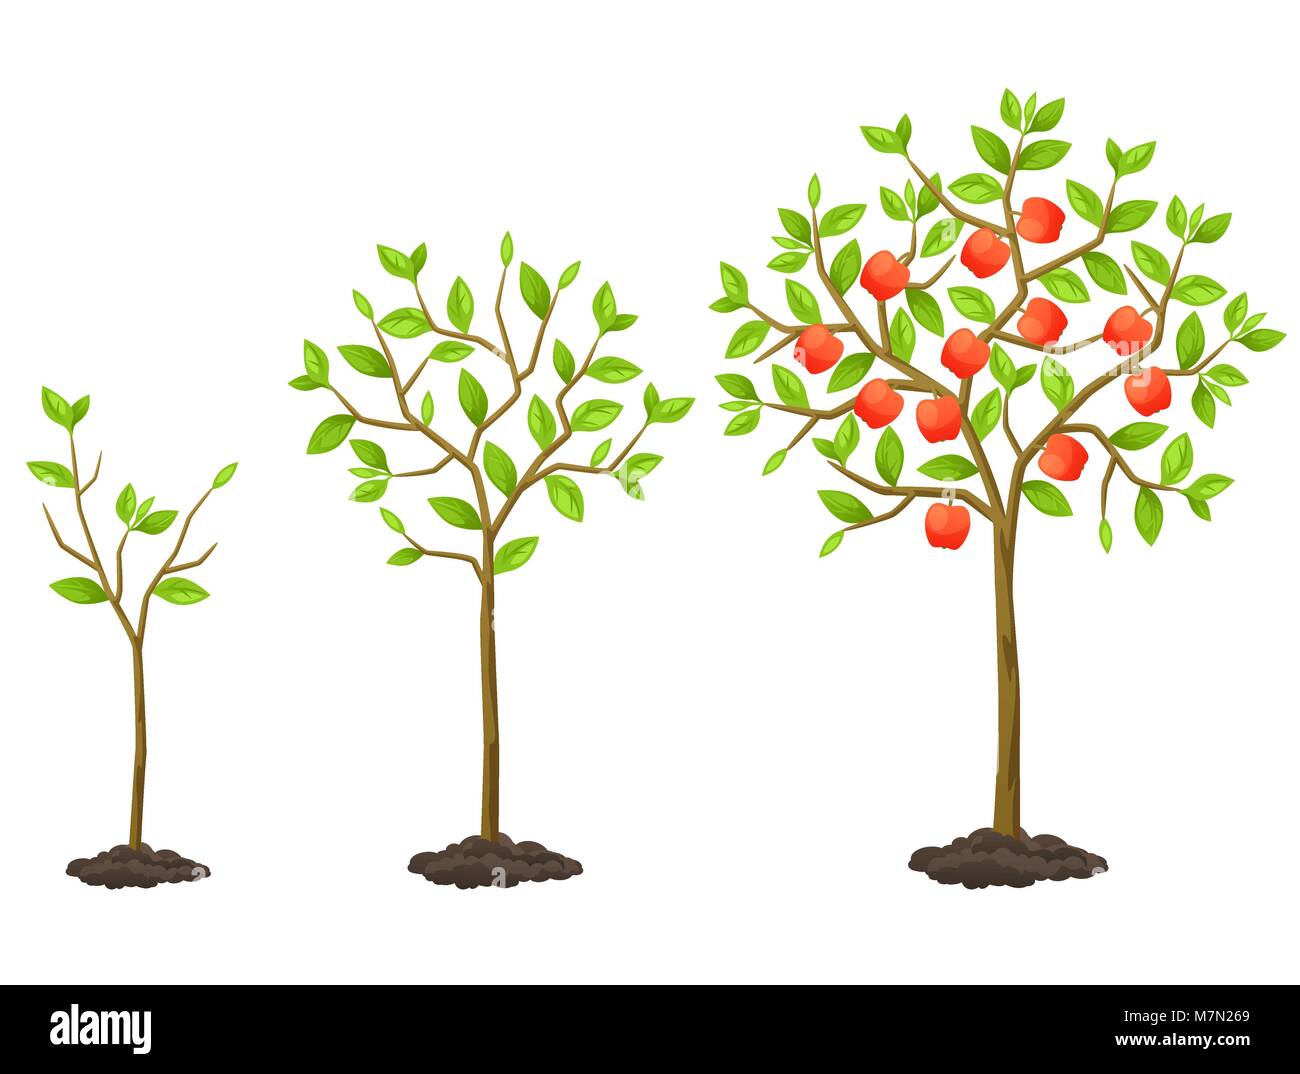 Wachstumszyklus vom Sämling zu Obstbaum. Abbildung für landwirtschaftliche Broschüren, Flyer Garten Stock Vektor